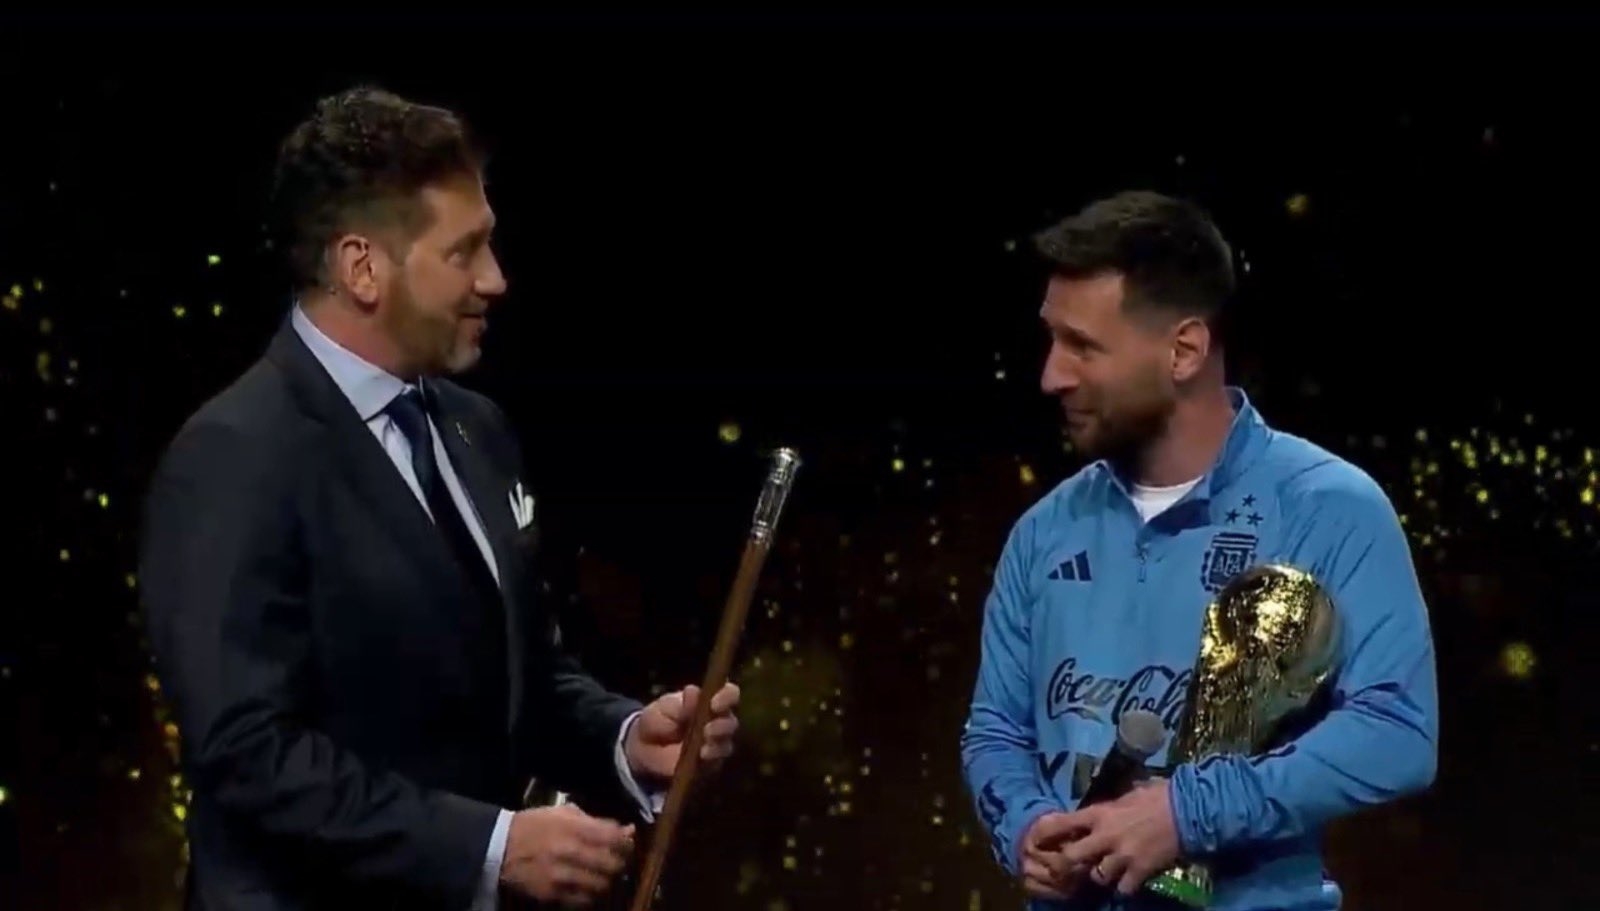 领袖象征！南美足协送给梅西象征世界级球员领袖的手杖